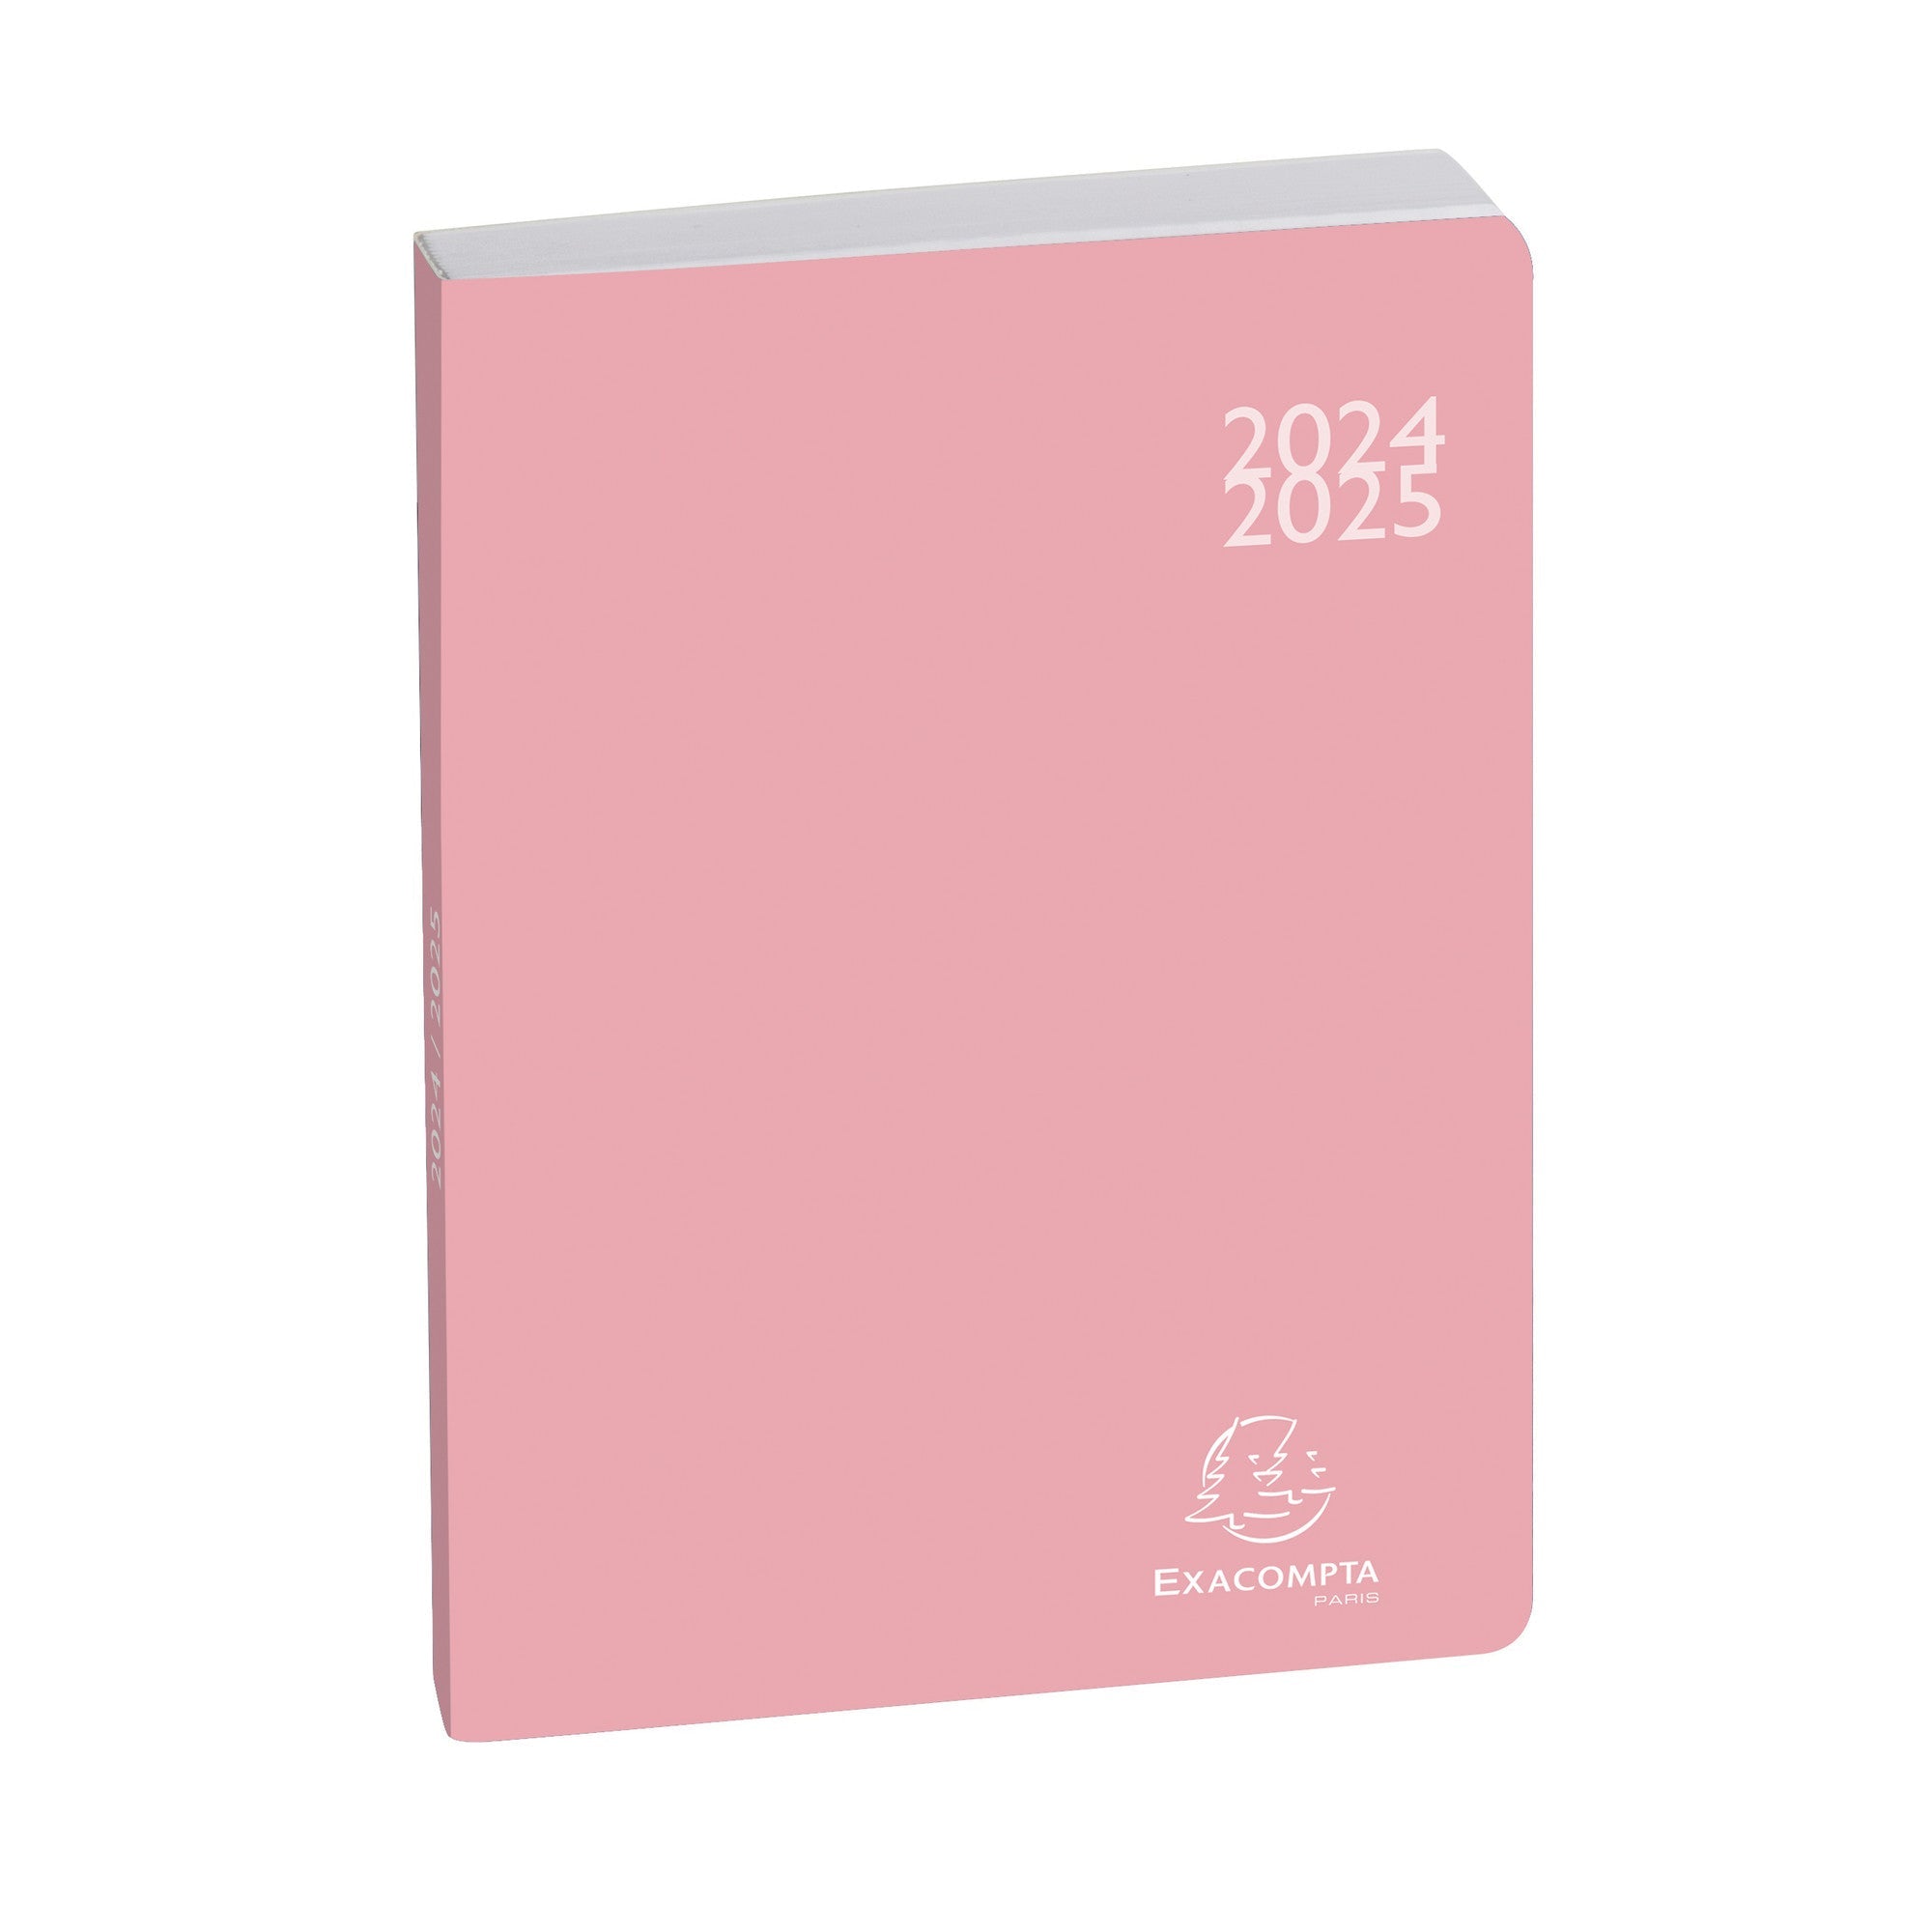 Agenda Scolaire 2024-2025 EXACOMPTA Forum Color Soft Harmony - 1 jour par page - 12 x 17 cm - Rose - 3660942073462